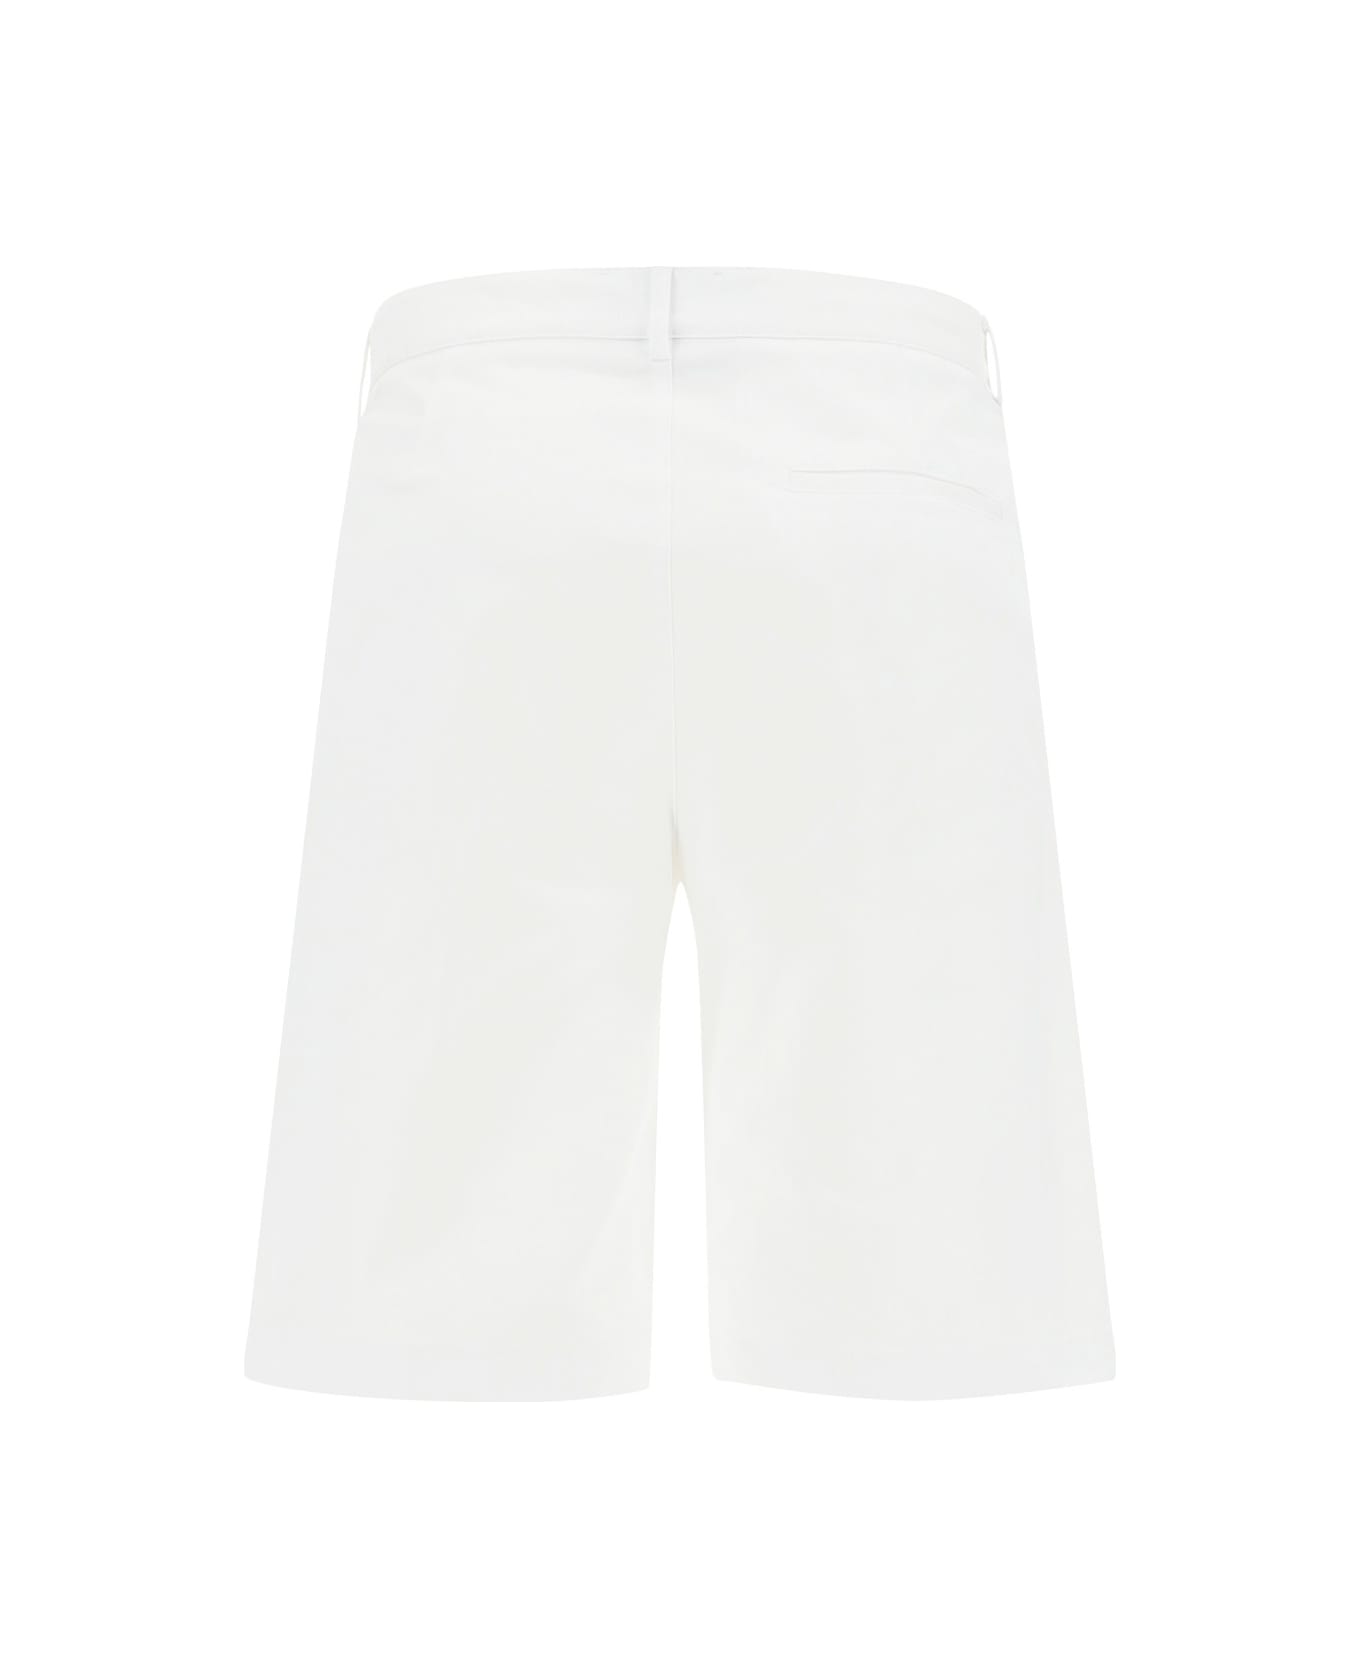 Les Hommes Shorts - White